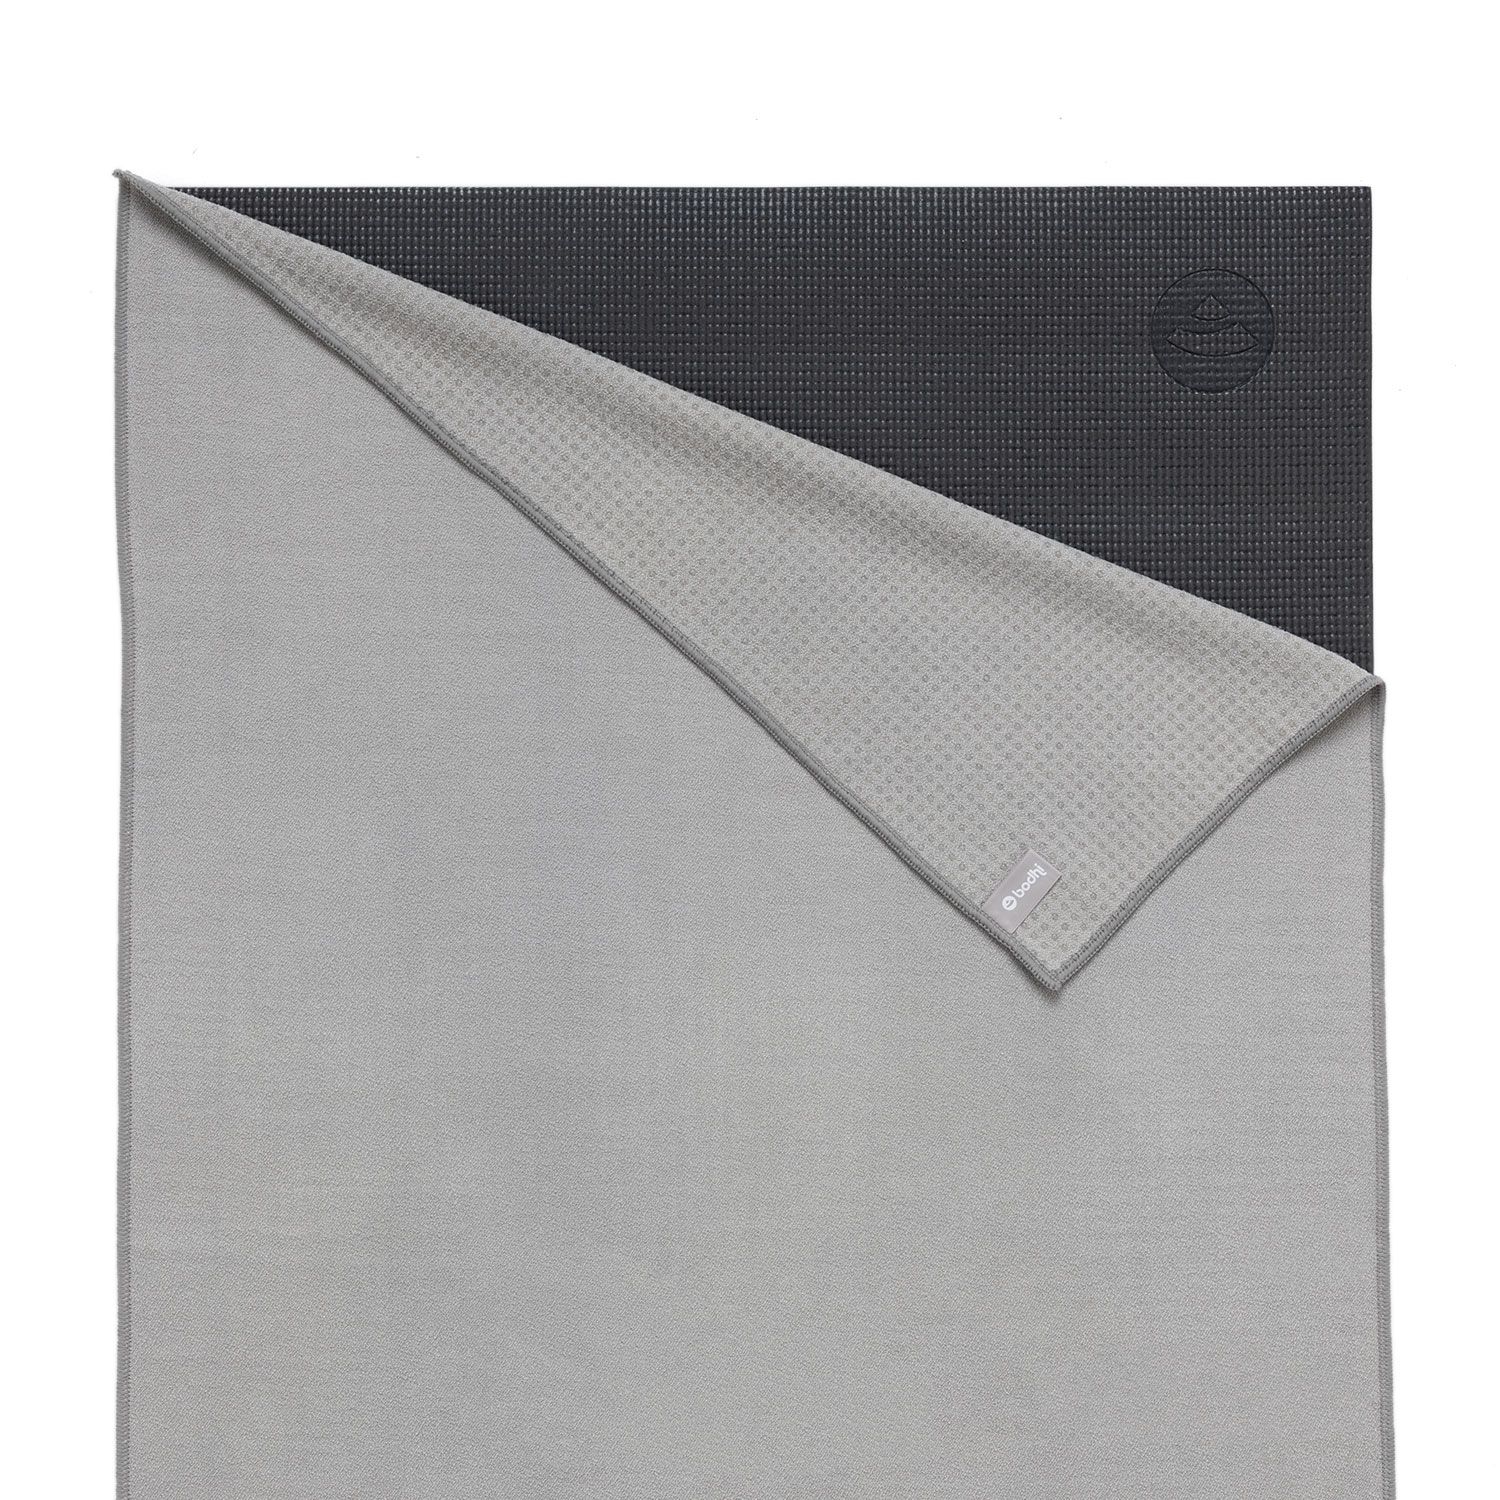 Grip² Yoga Towel mit Antirutschnoppen, hellgrau 905-G